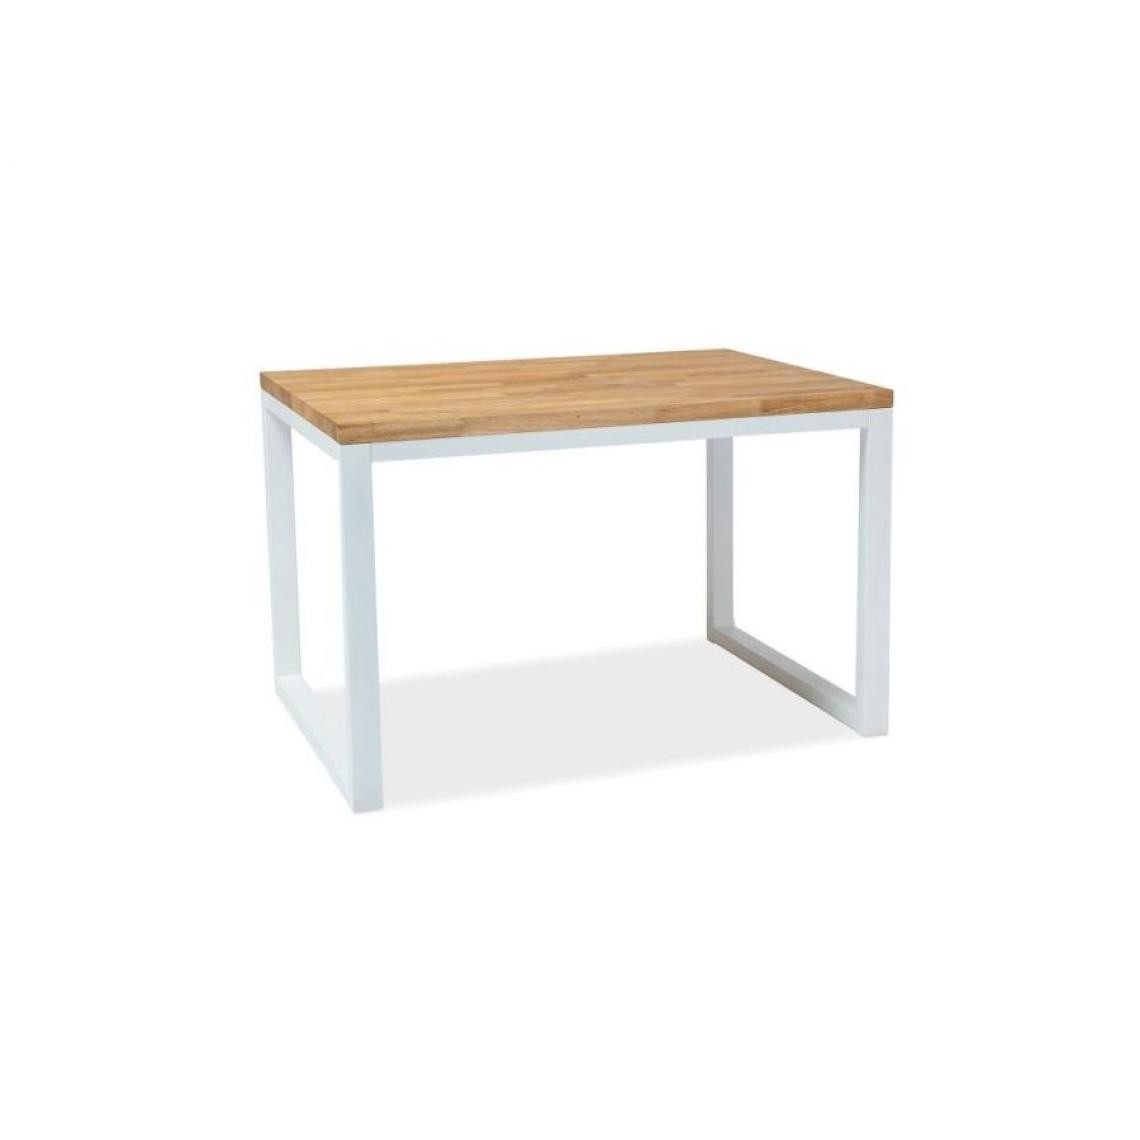 Hucoco - LORAI - Table moderne de style scandinave - 150X90x78 cm - Plateau en bois en placage naturel - Piètement en métal - Chêne - Tables à manger